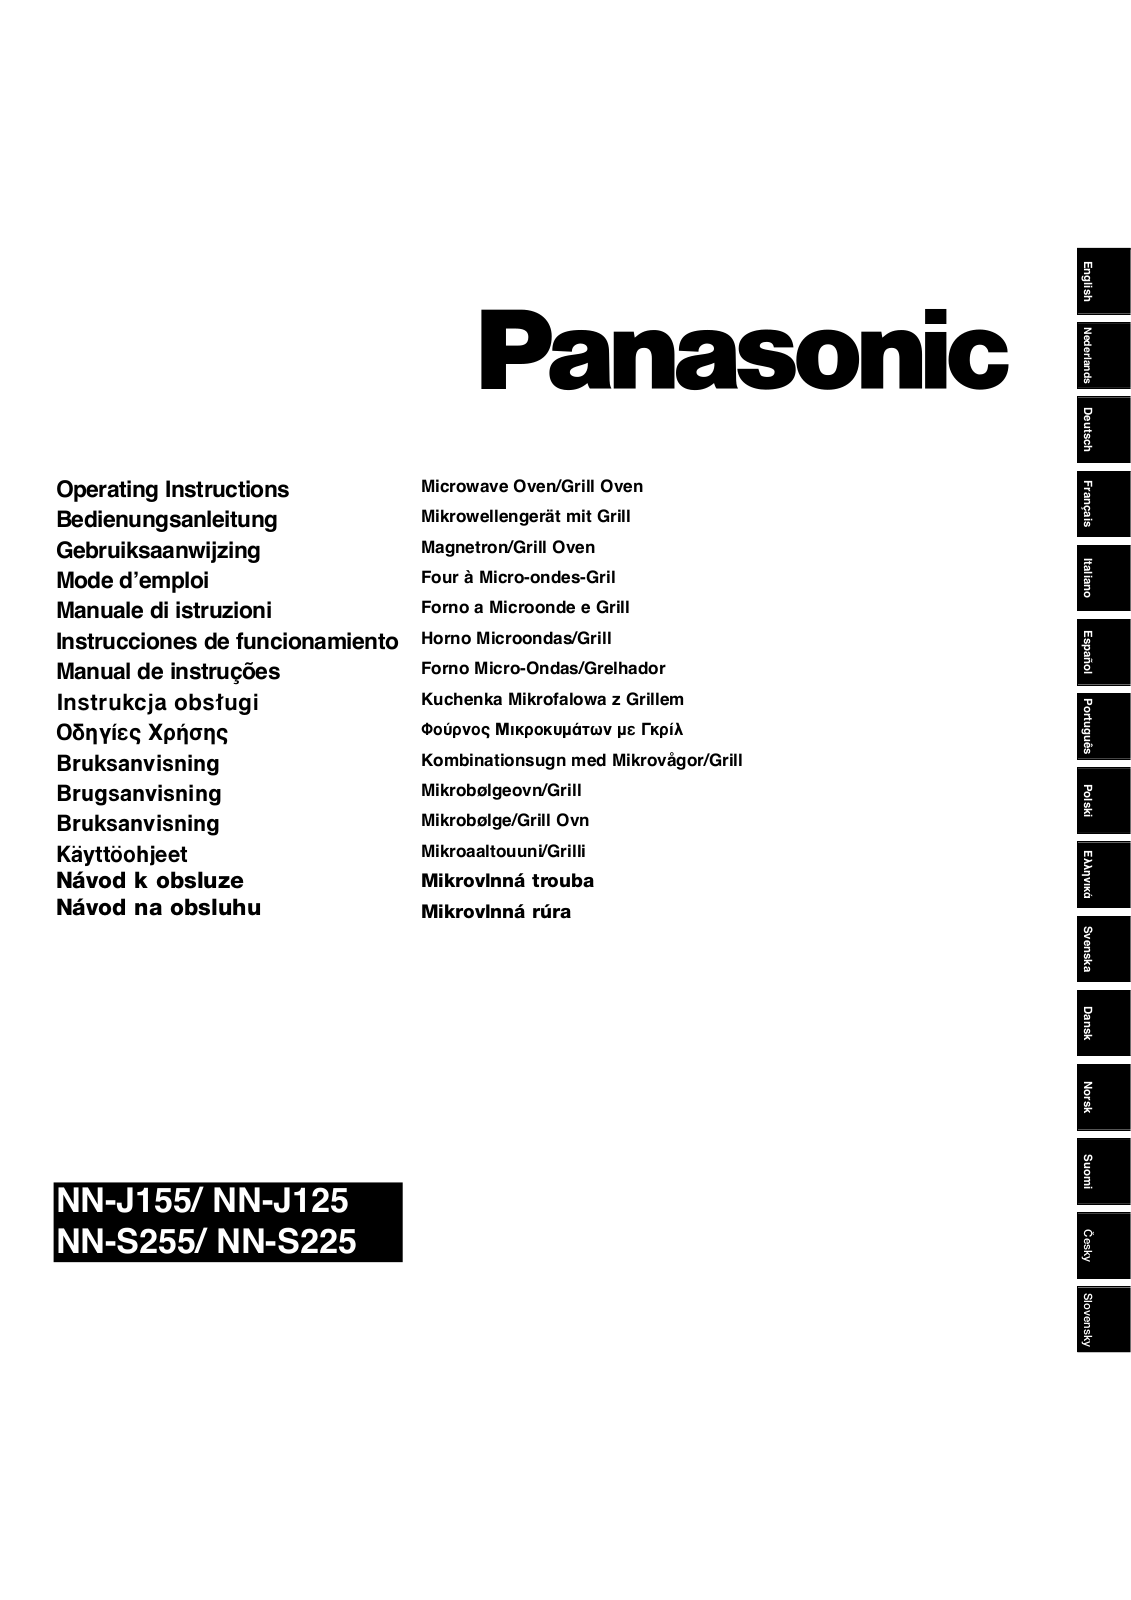 PANASONIC NNS255WBEPG, NNS225MBEPG, NNJ125MBWPG, NNJ125MBEPG User Manual